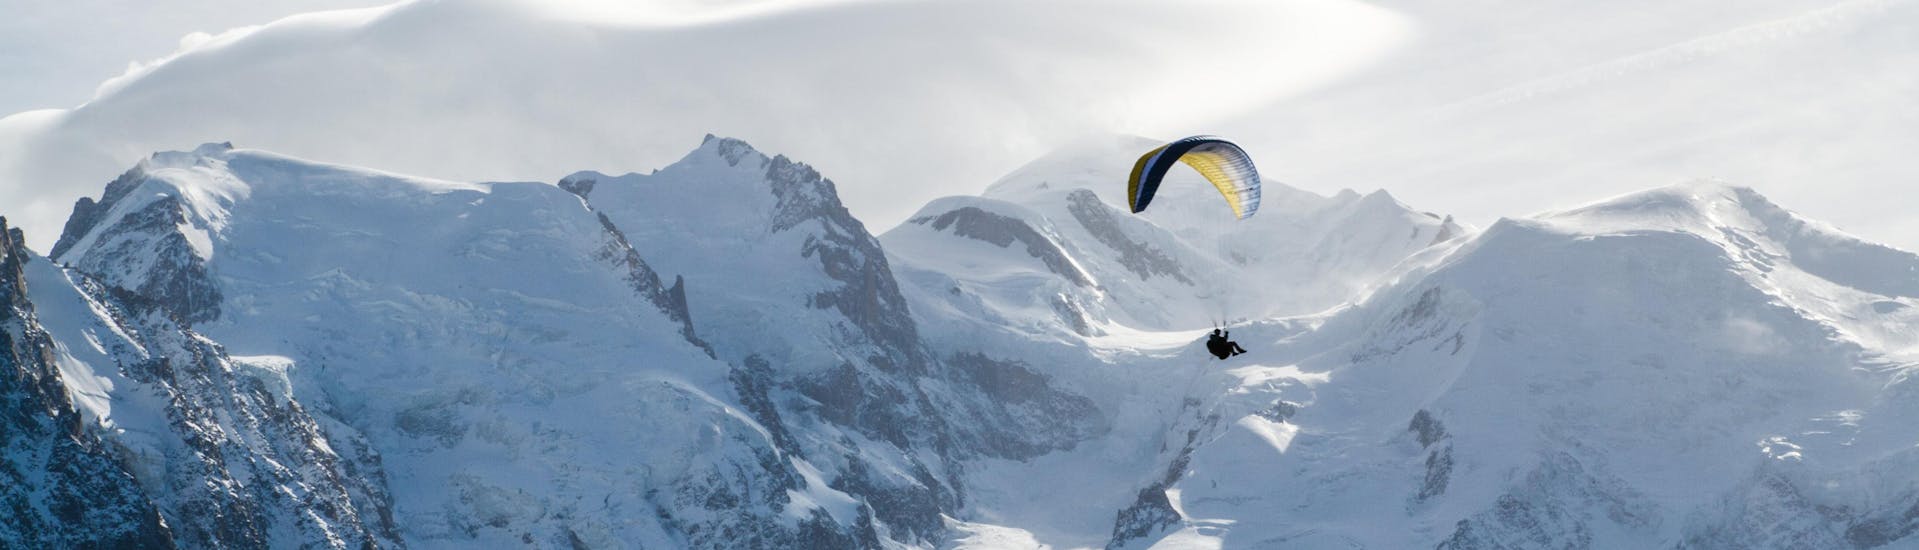 Une personne effectue un vol en parapente dans la vallée de Chamonix avec en fond les montagnes enneigées.